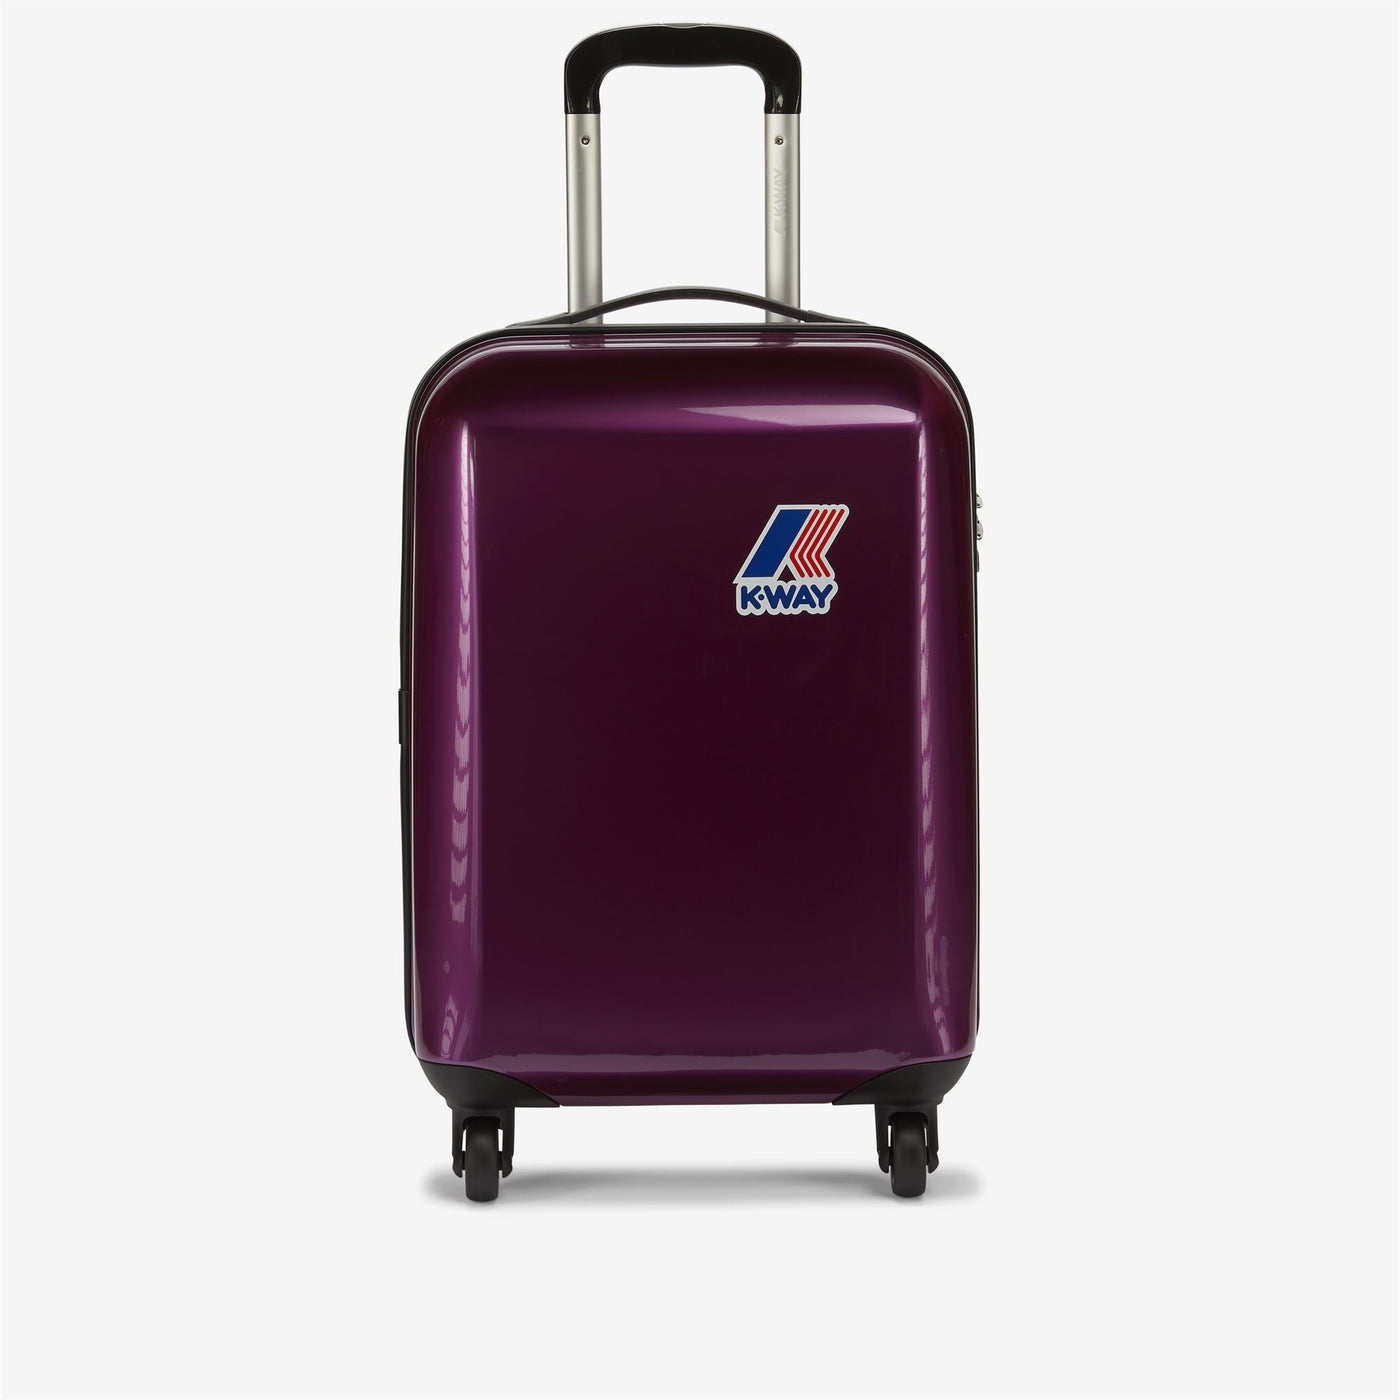 Luggage Bags Unisex K-WAY SYSTEM MINI TROLLEY Trolley PINK - BLACK TORBA Photo (jpg Rgb)			